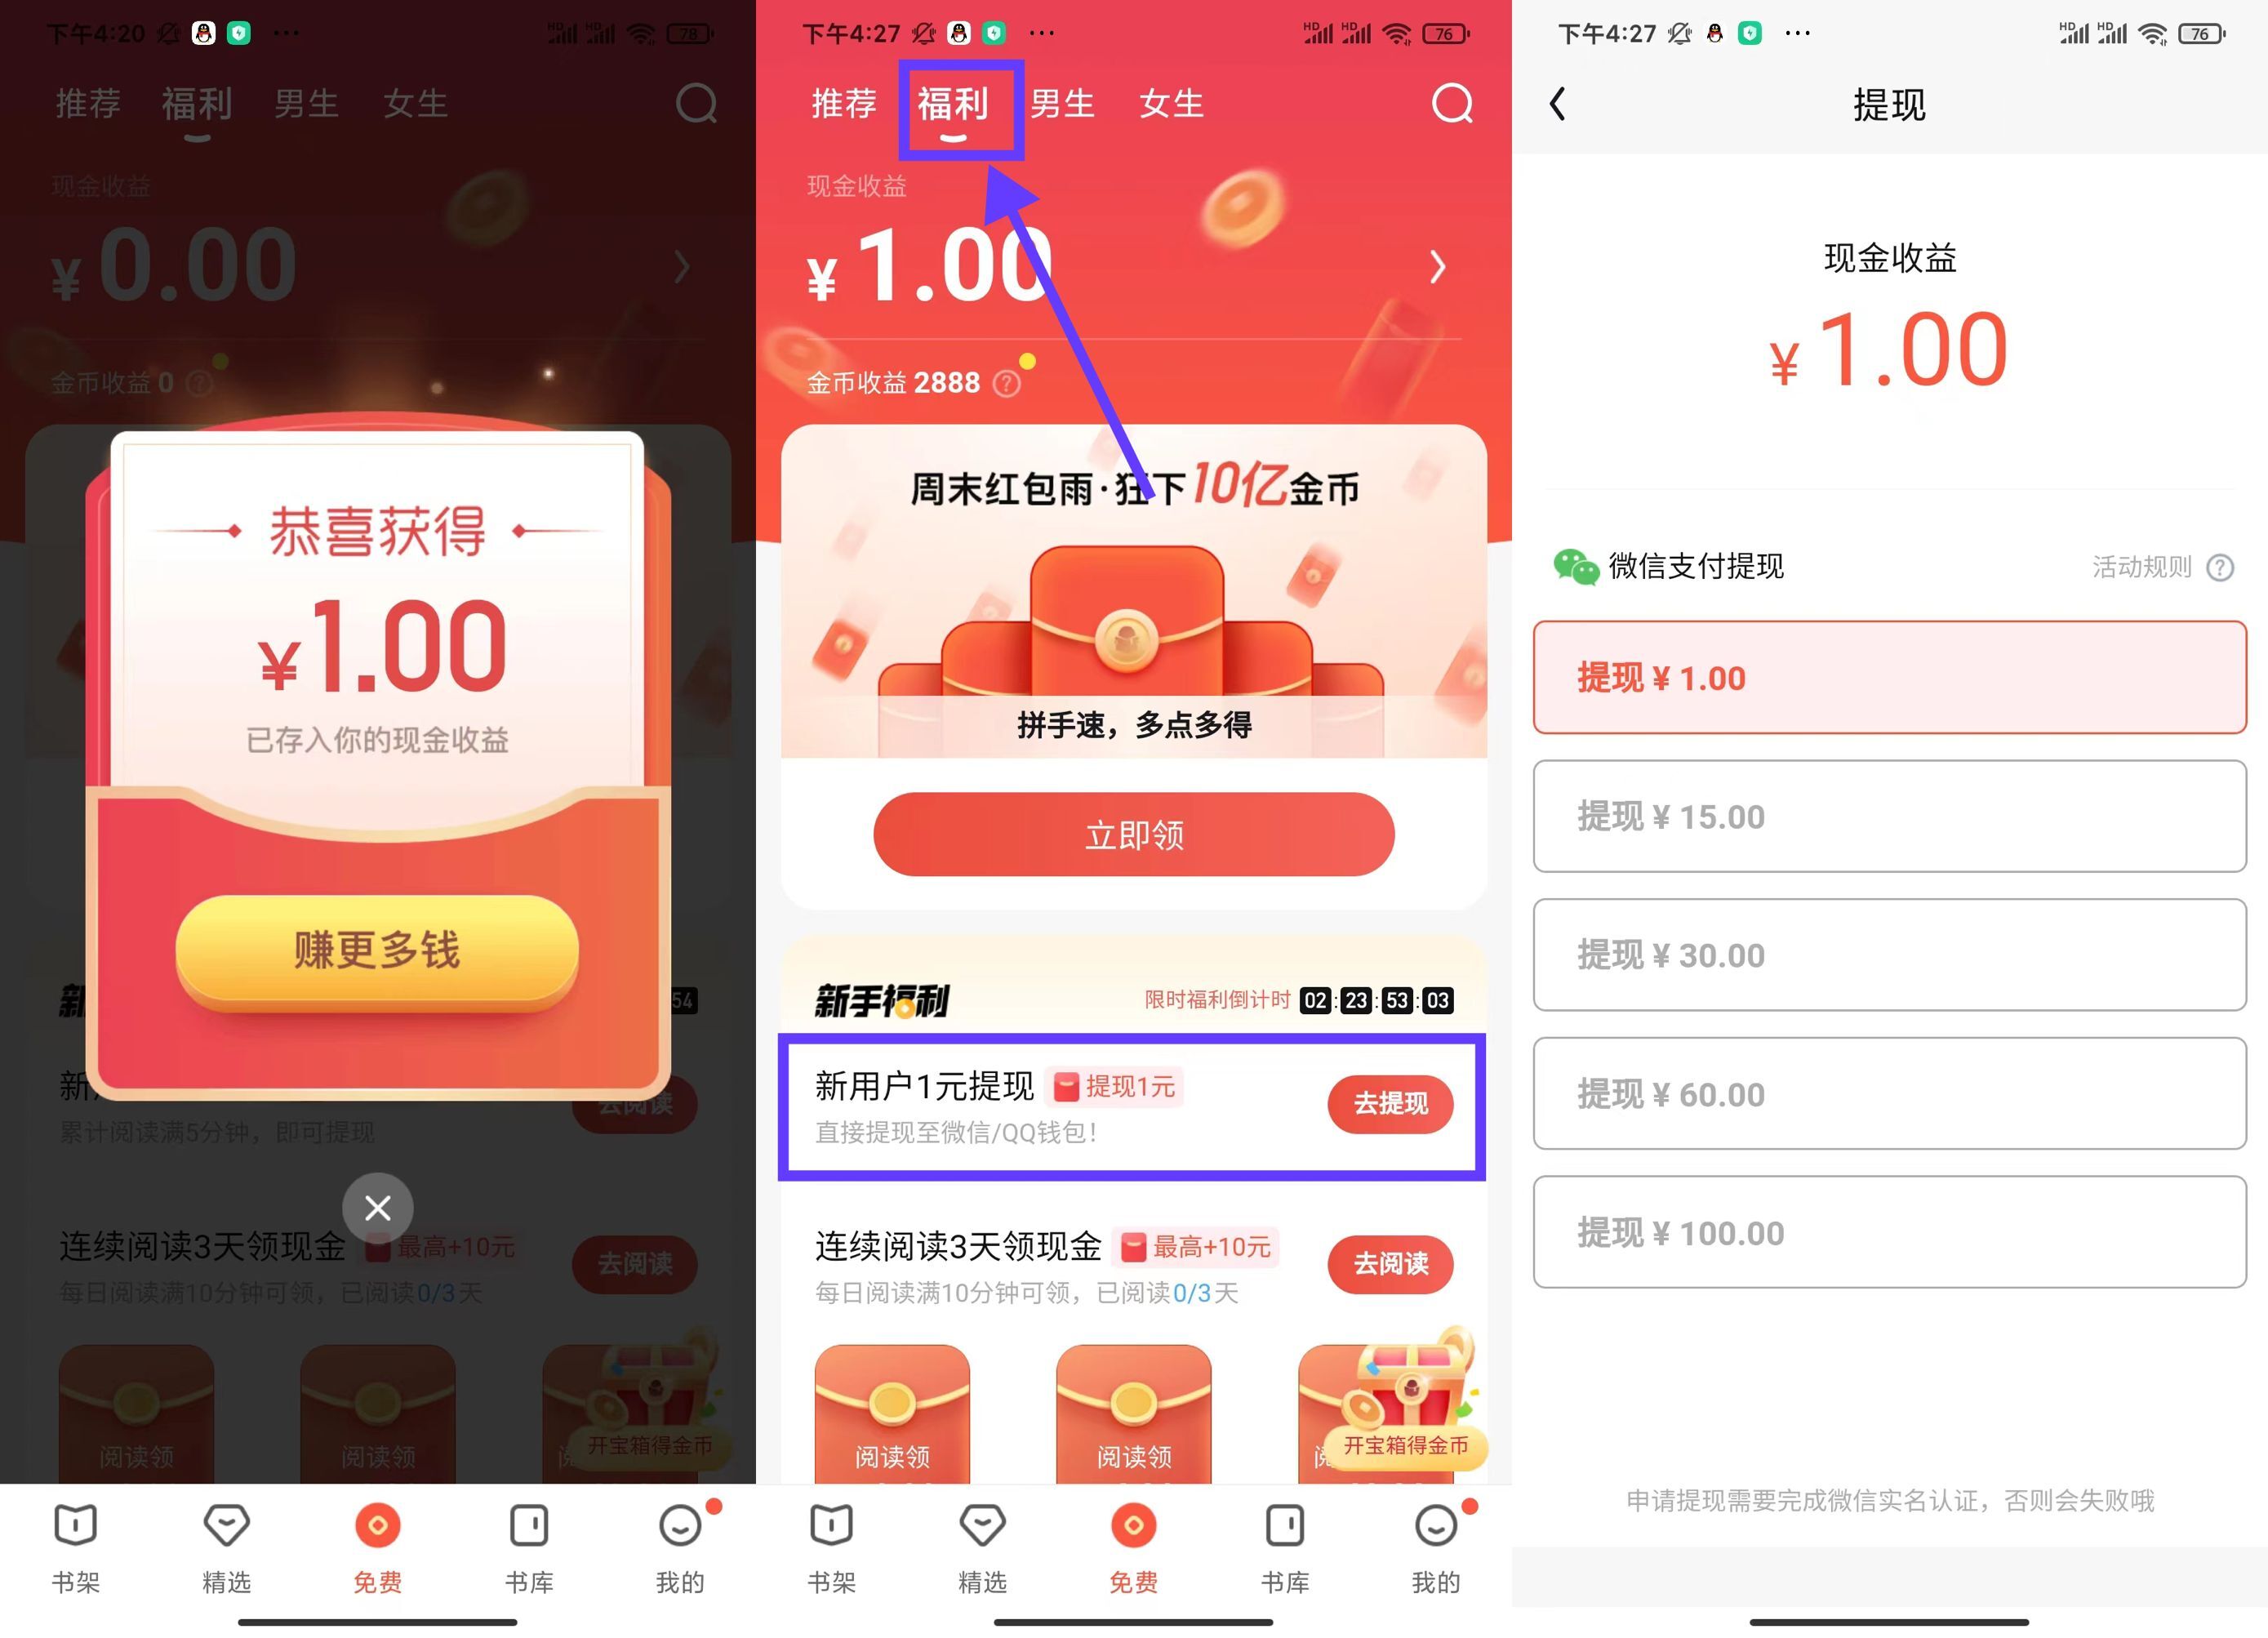 【现金红包】QQ阅读新用户领1元红包（必得）「2022.4.11」